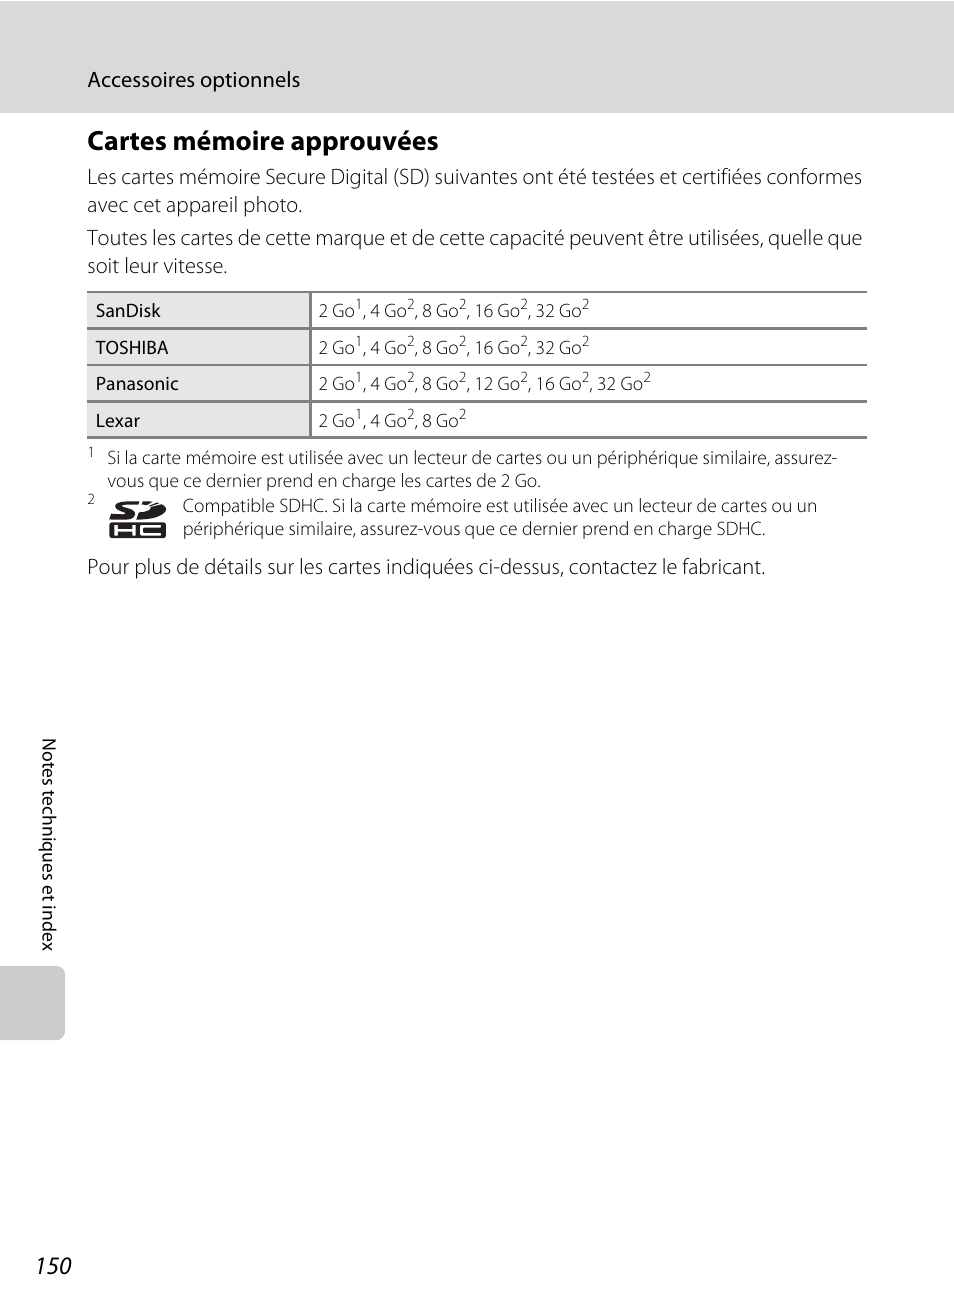 Cartes mémoire approuvées, Accessoires optionnels | Nikon Coolpix S3000 Manuel d'utilisation | Page 162 / 184